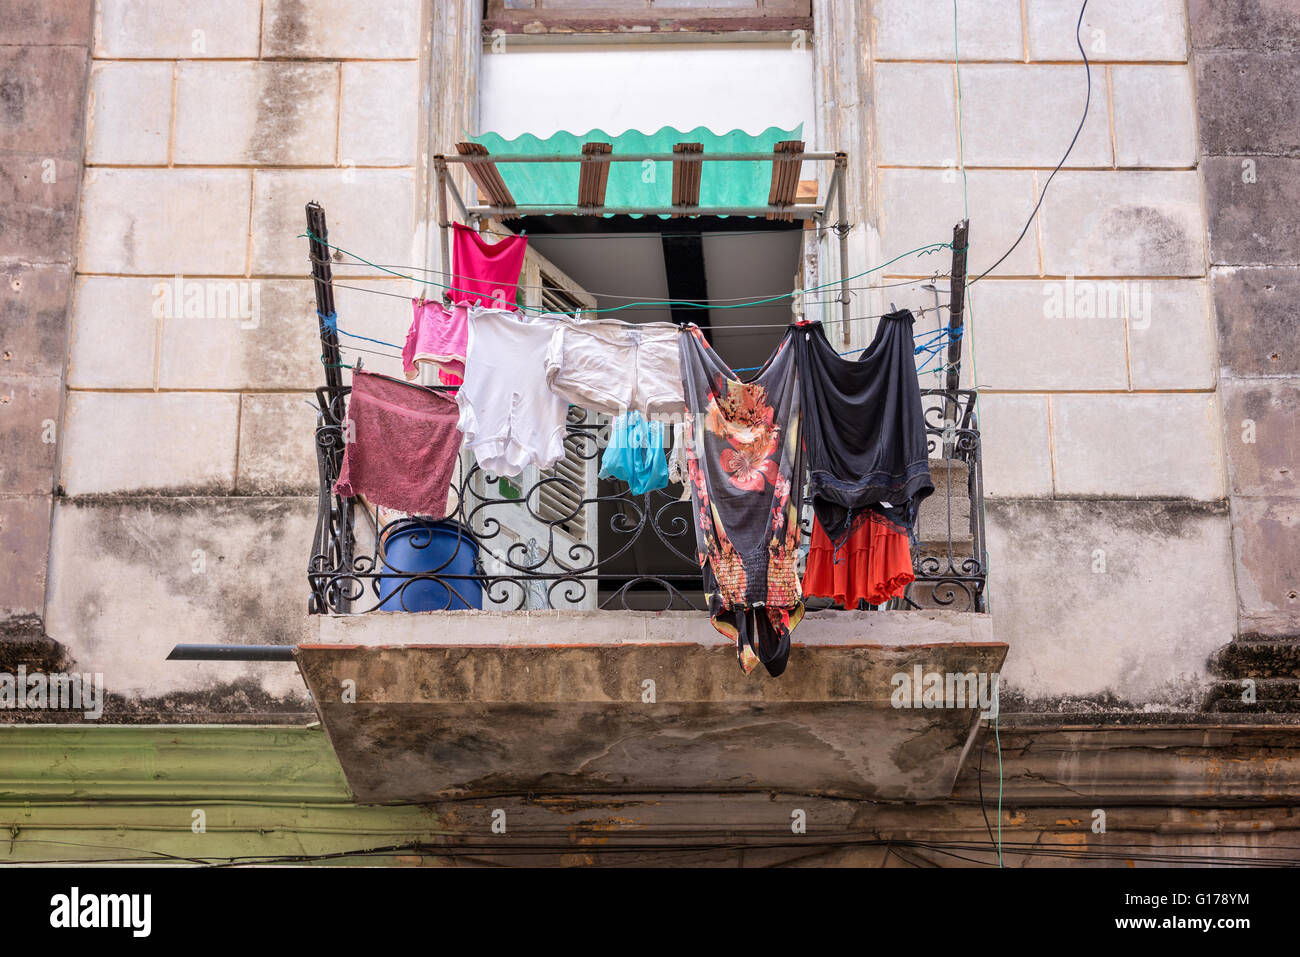 Servicio de lavandería en el balcón de un edificio antiguo, La Habana Vieja, Cuba Foto de stock